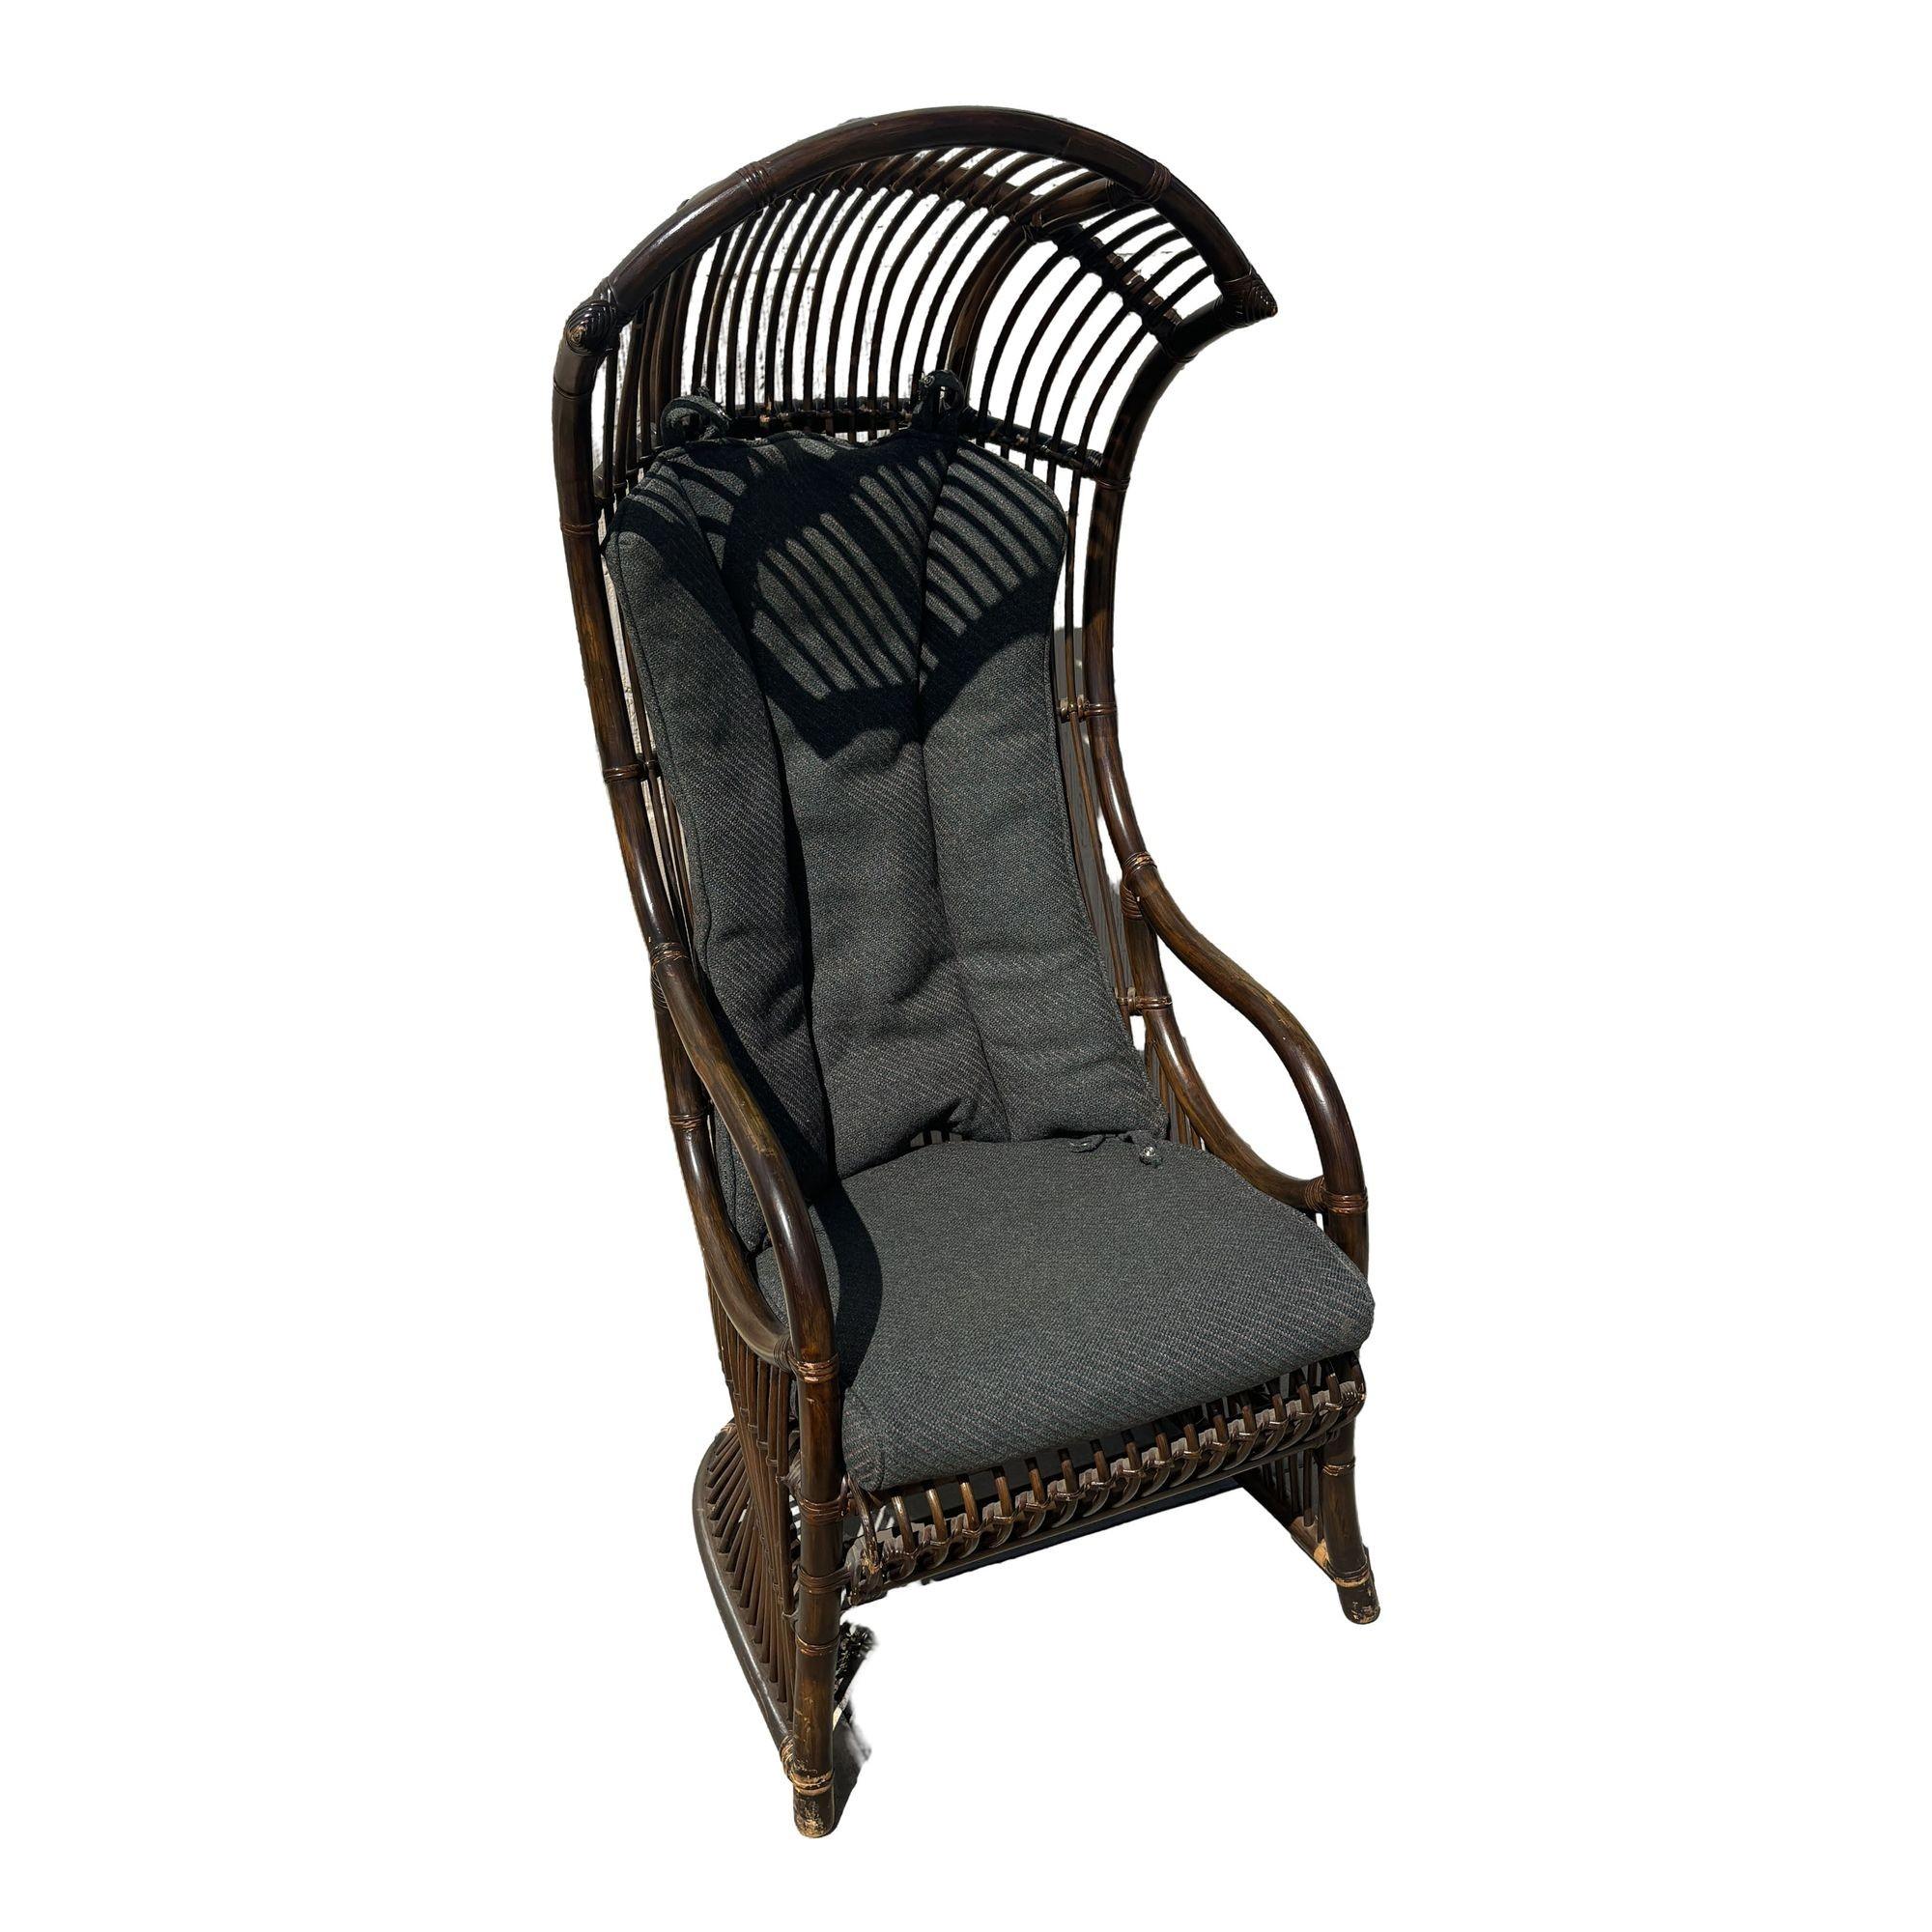 Revitalisez votre espace avec notre paire de chaises en rotin restaurées, teintées en brun espresso foncé et dotées d'un baldaquin. Ce duo exquis ajoute une touche de sophistication et de confort de style Mid-century à n'importe quelle pièce,